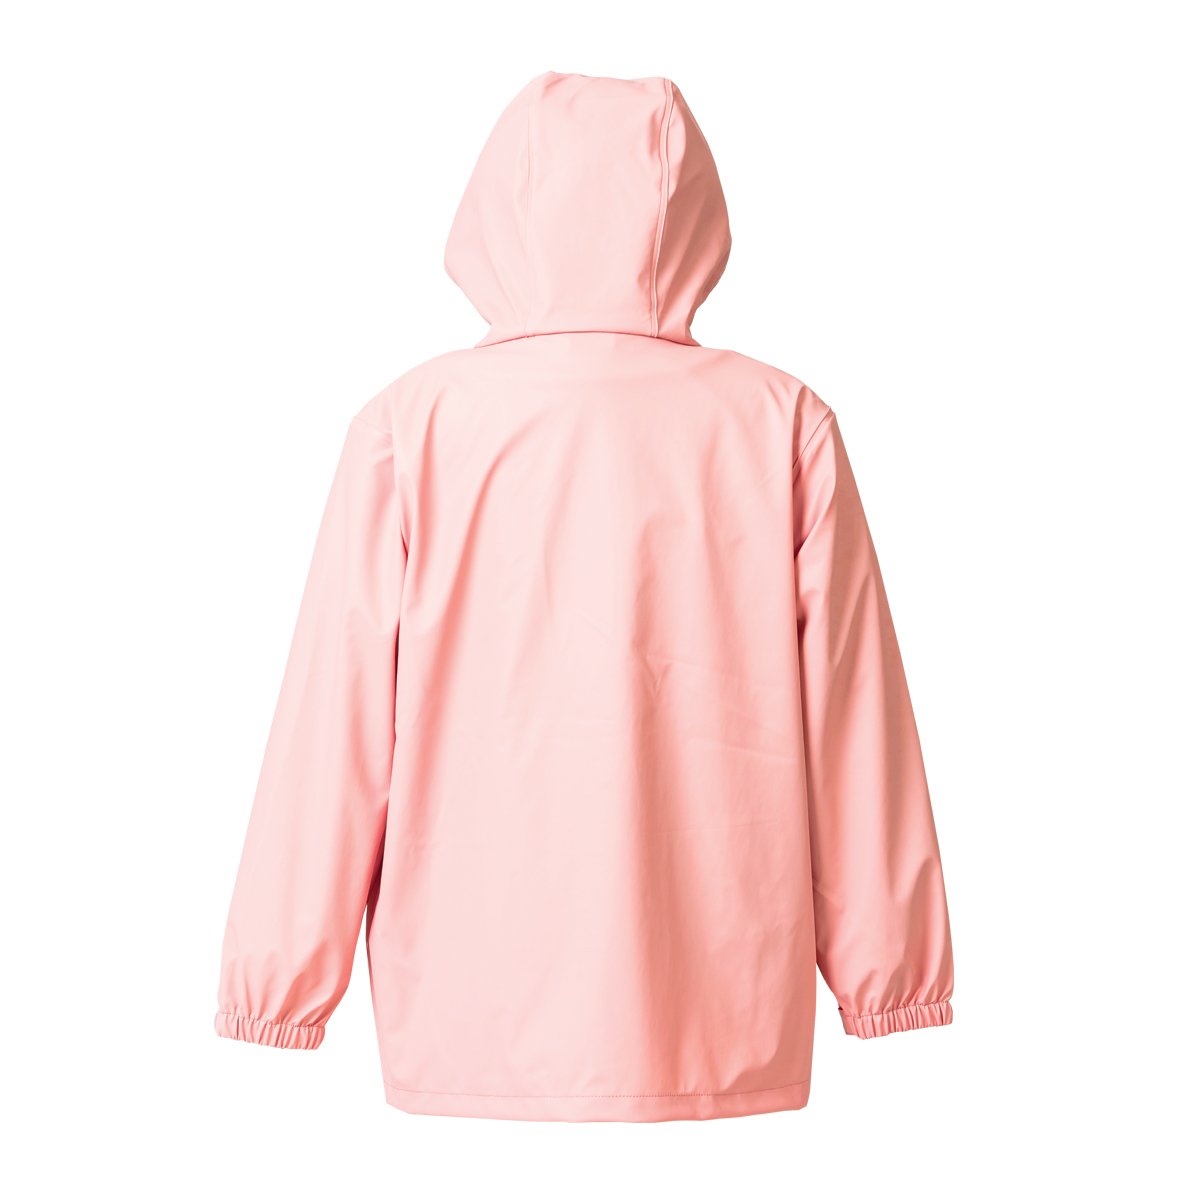 waterproof kids jacket pink back